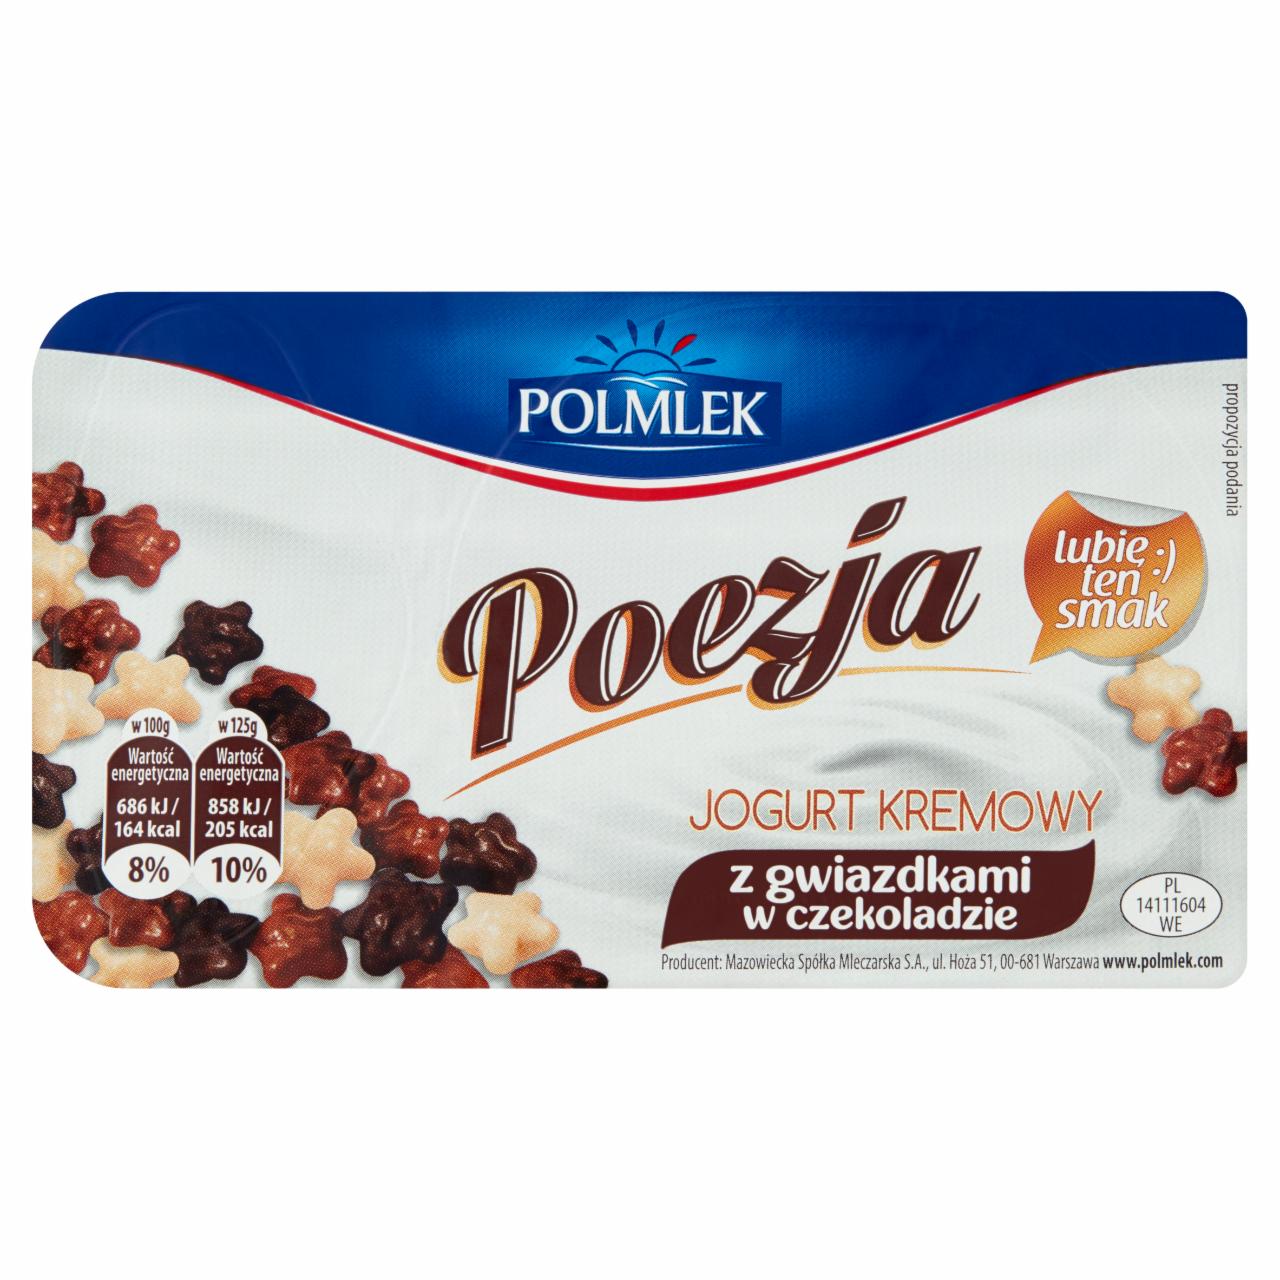 Zdjęcia - Polmlek Poezja Jogurt kremowy z gwiazdkami w czekoladzie 125 g